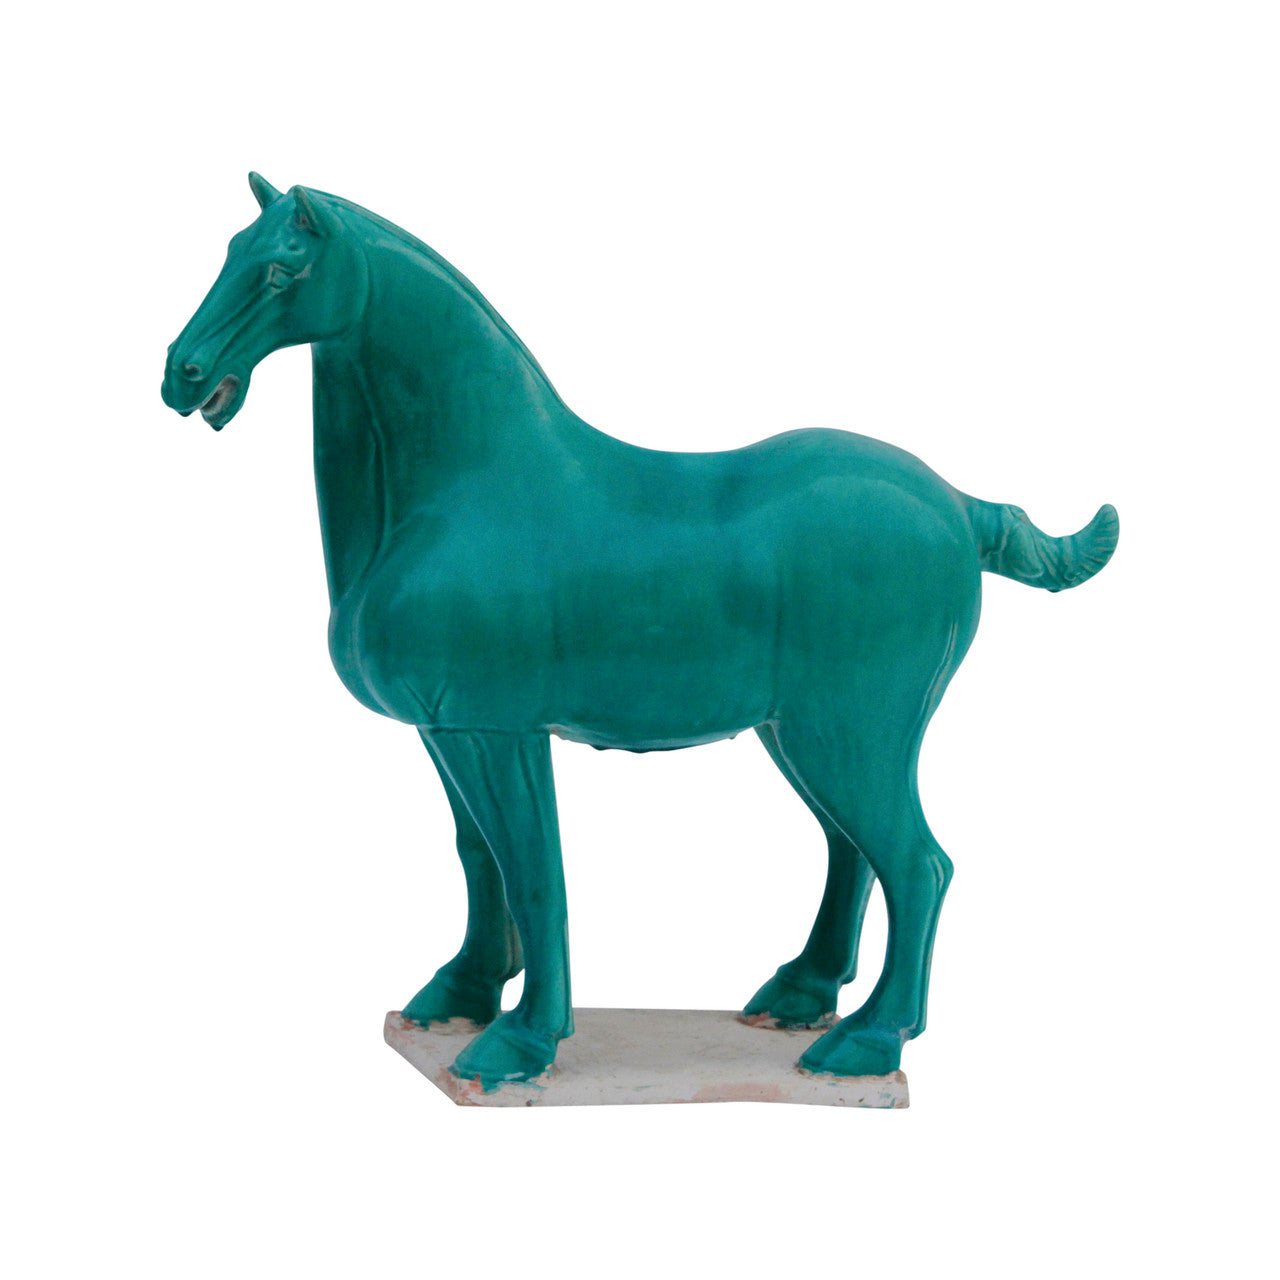 Turquoise Glazed Pony Sculpture